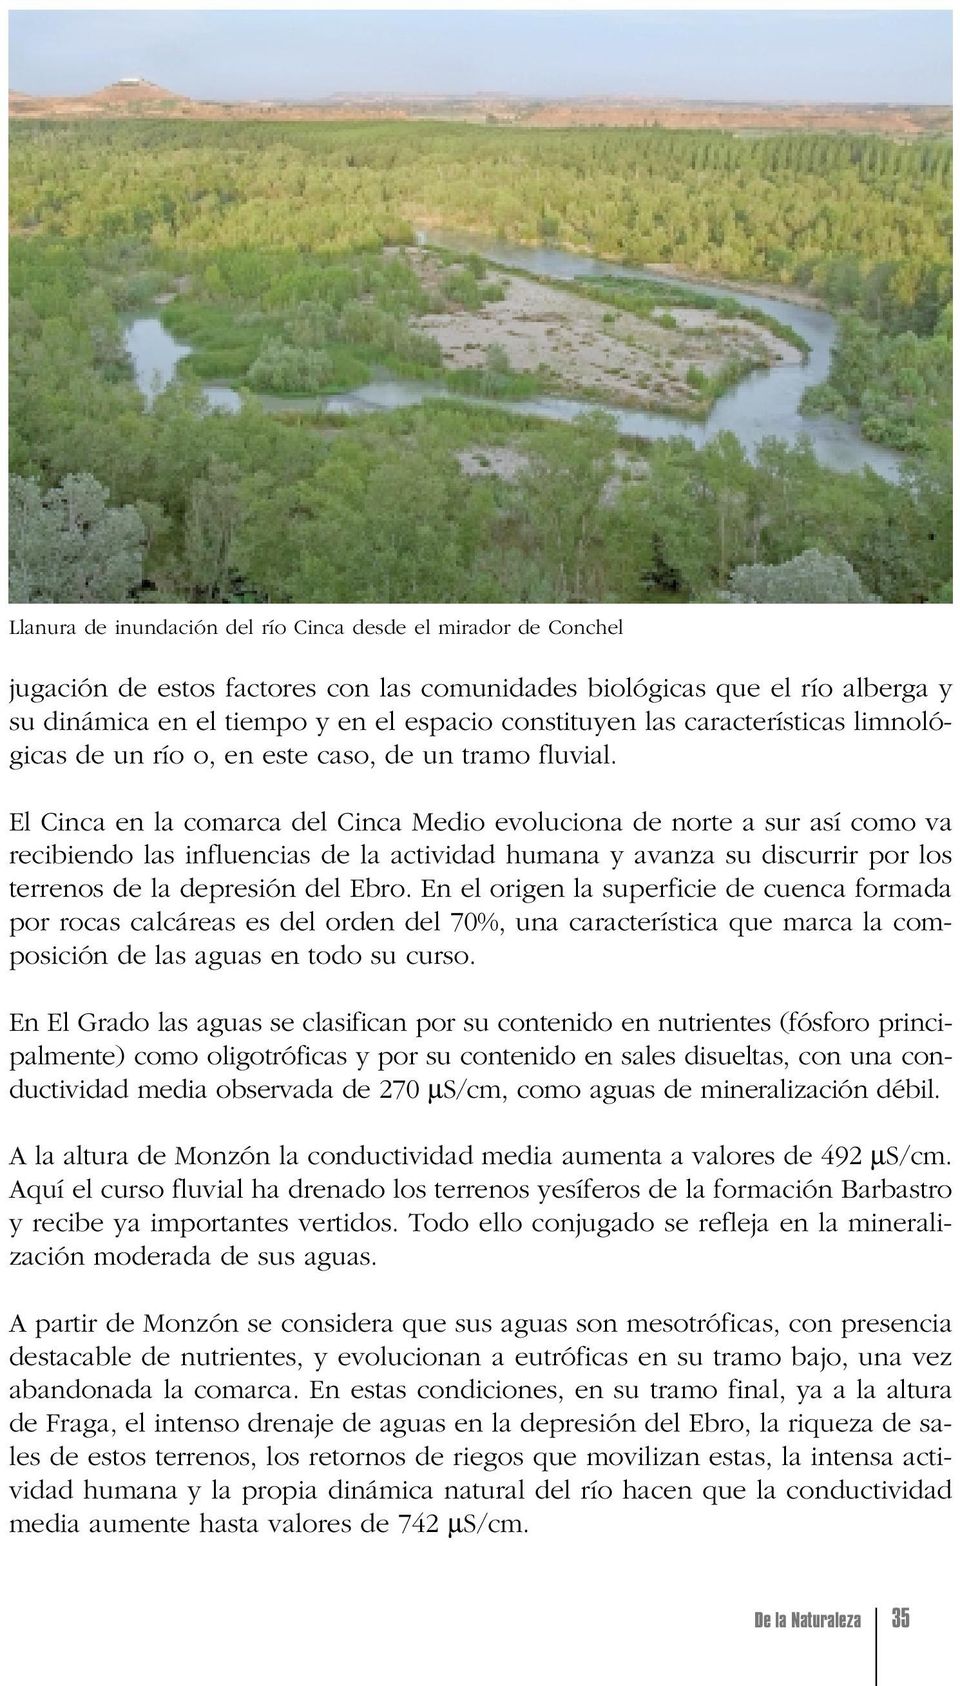 El Cinca en la comarca del Cinca Medio evoluciona de norte a sur así como va recibiendo las influencias de la actividad humana y avanza su discurrir por los terrenos de la depresión del Ebro.